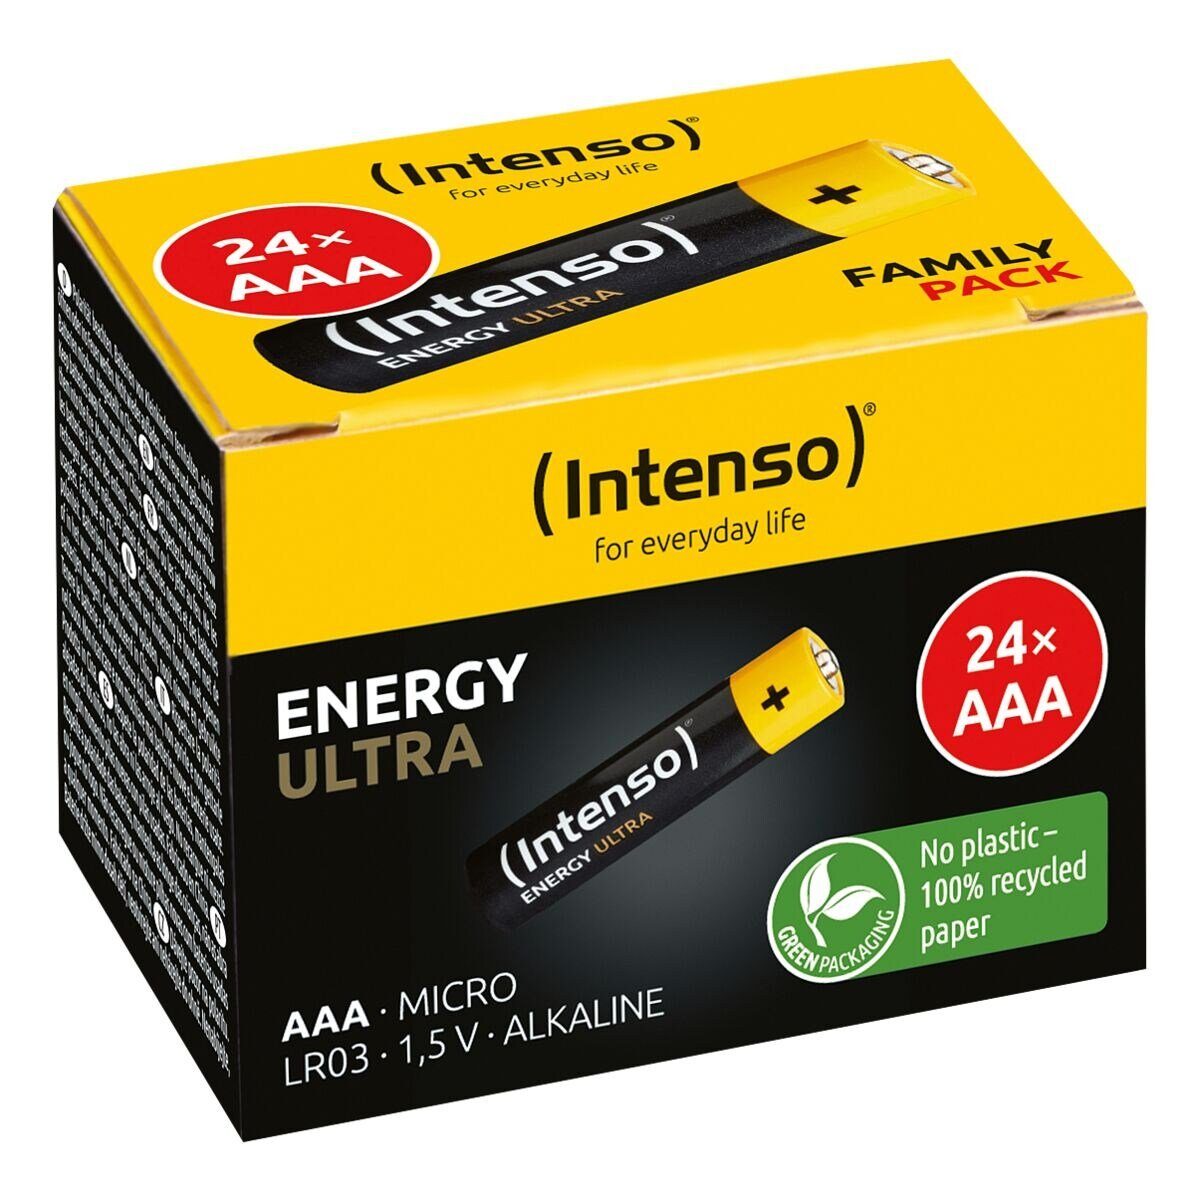 Intenso Energy Ultra Batterie, / (1.5 St), V, / 1,5 AAA 24 LR3 / V, LR03, Alkali Micro